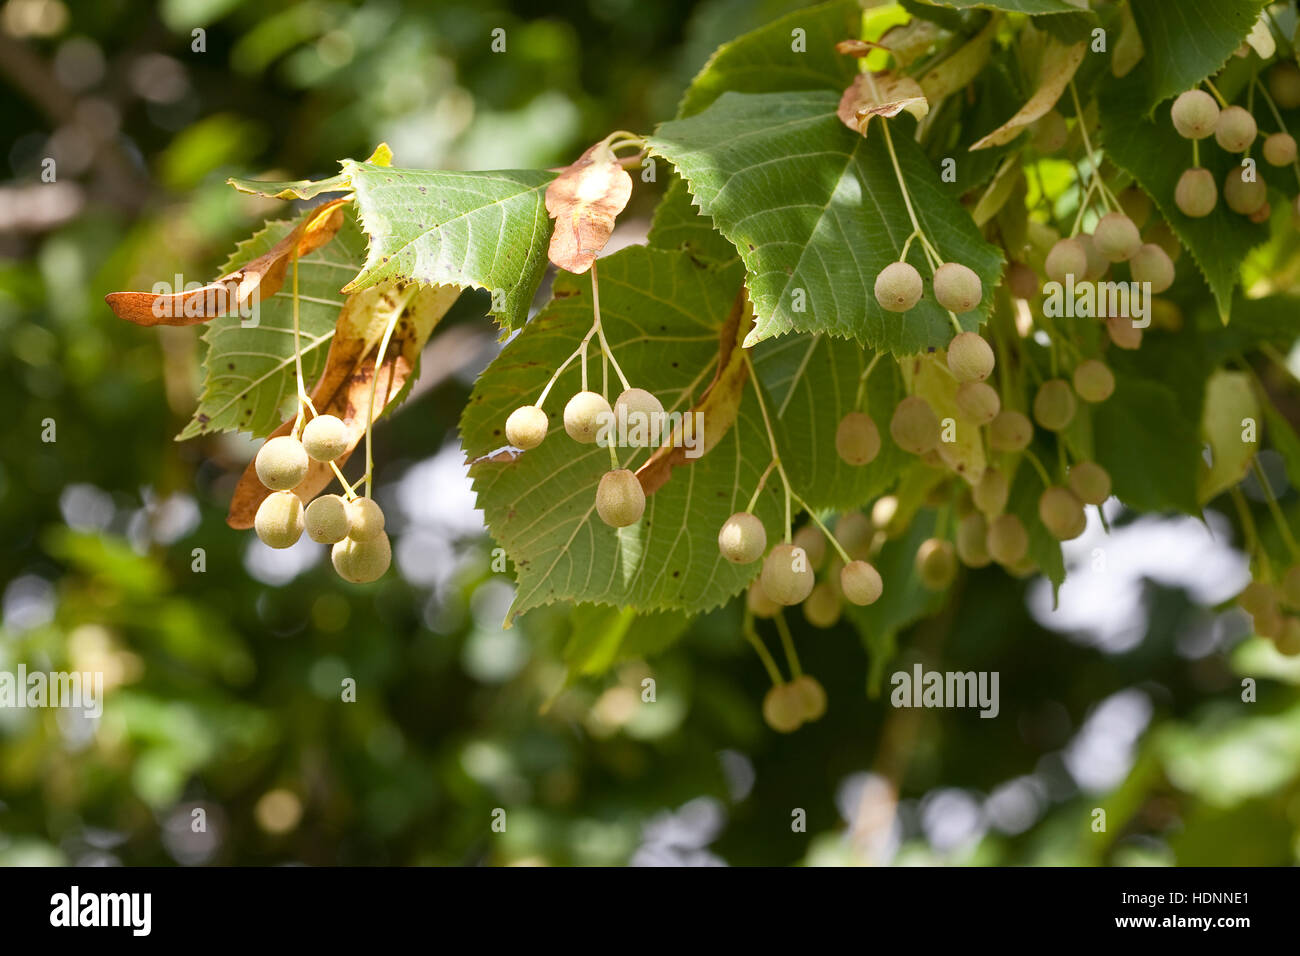 Sommer-Linde, Sommellinde, Sommer - Linde, Tilia platyphyllos, Früchte, Samen, Large Leave Lime Stock Photo